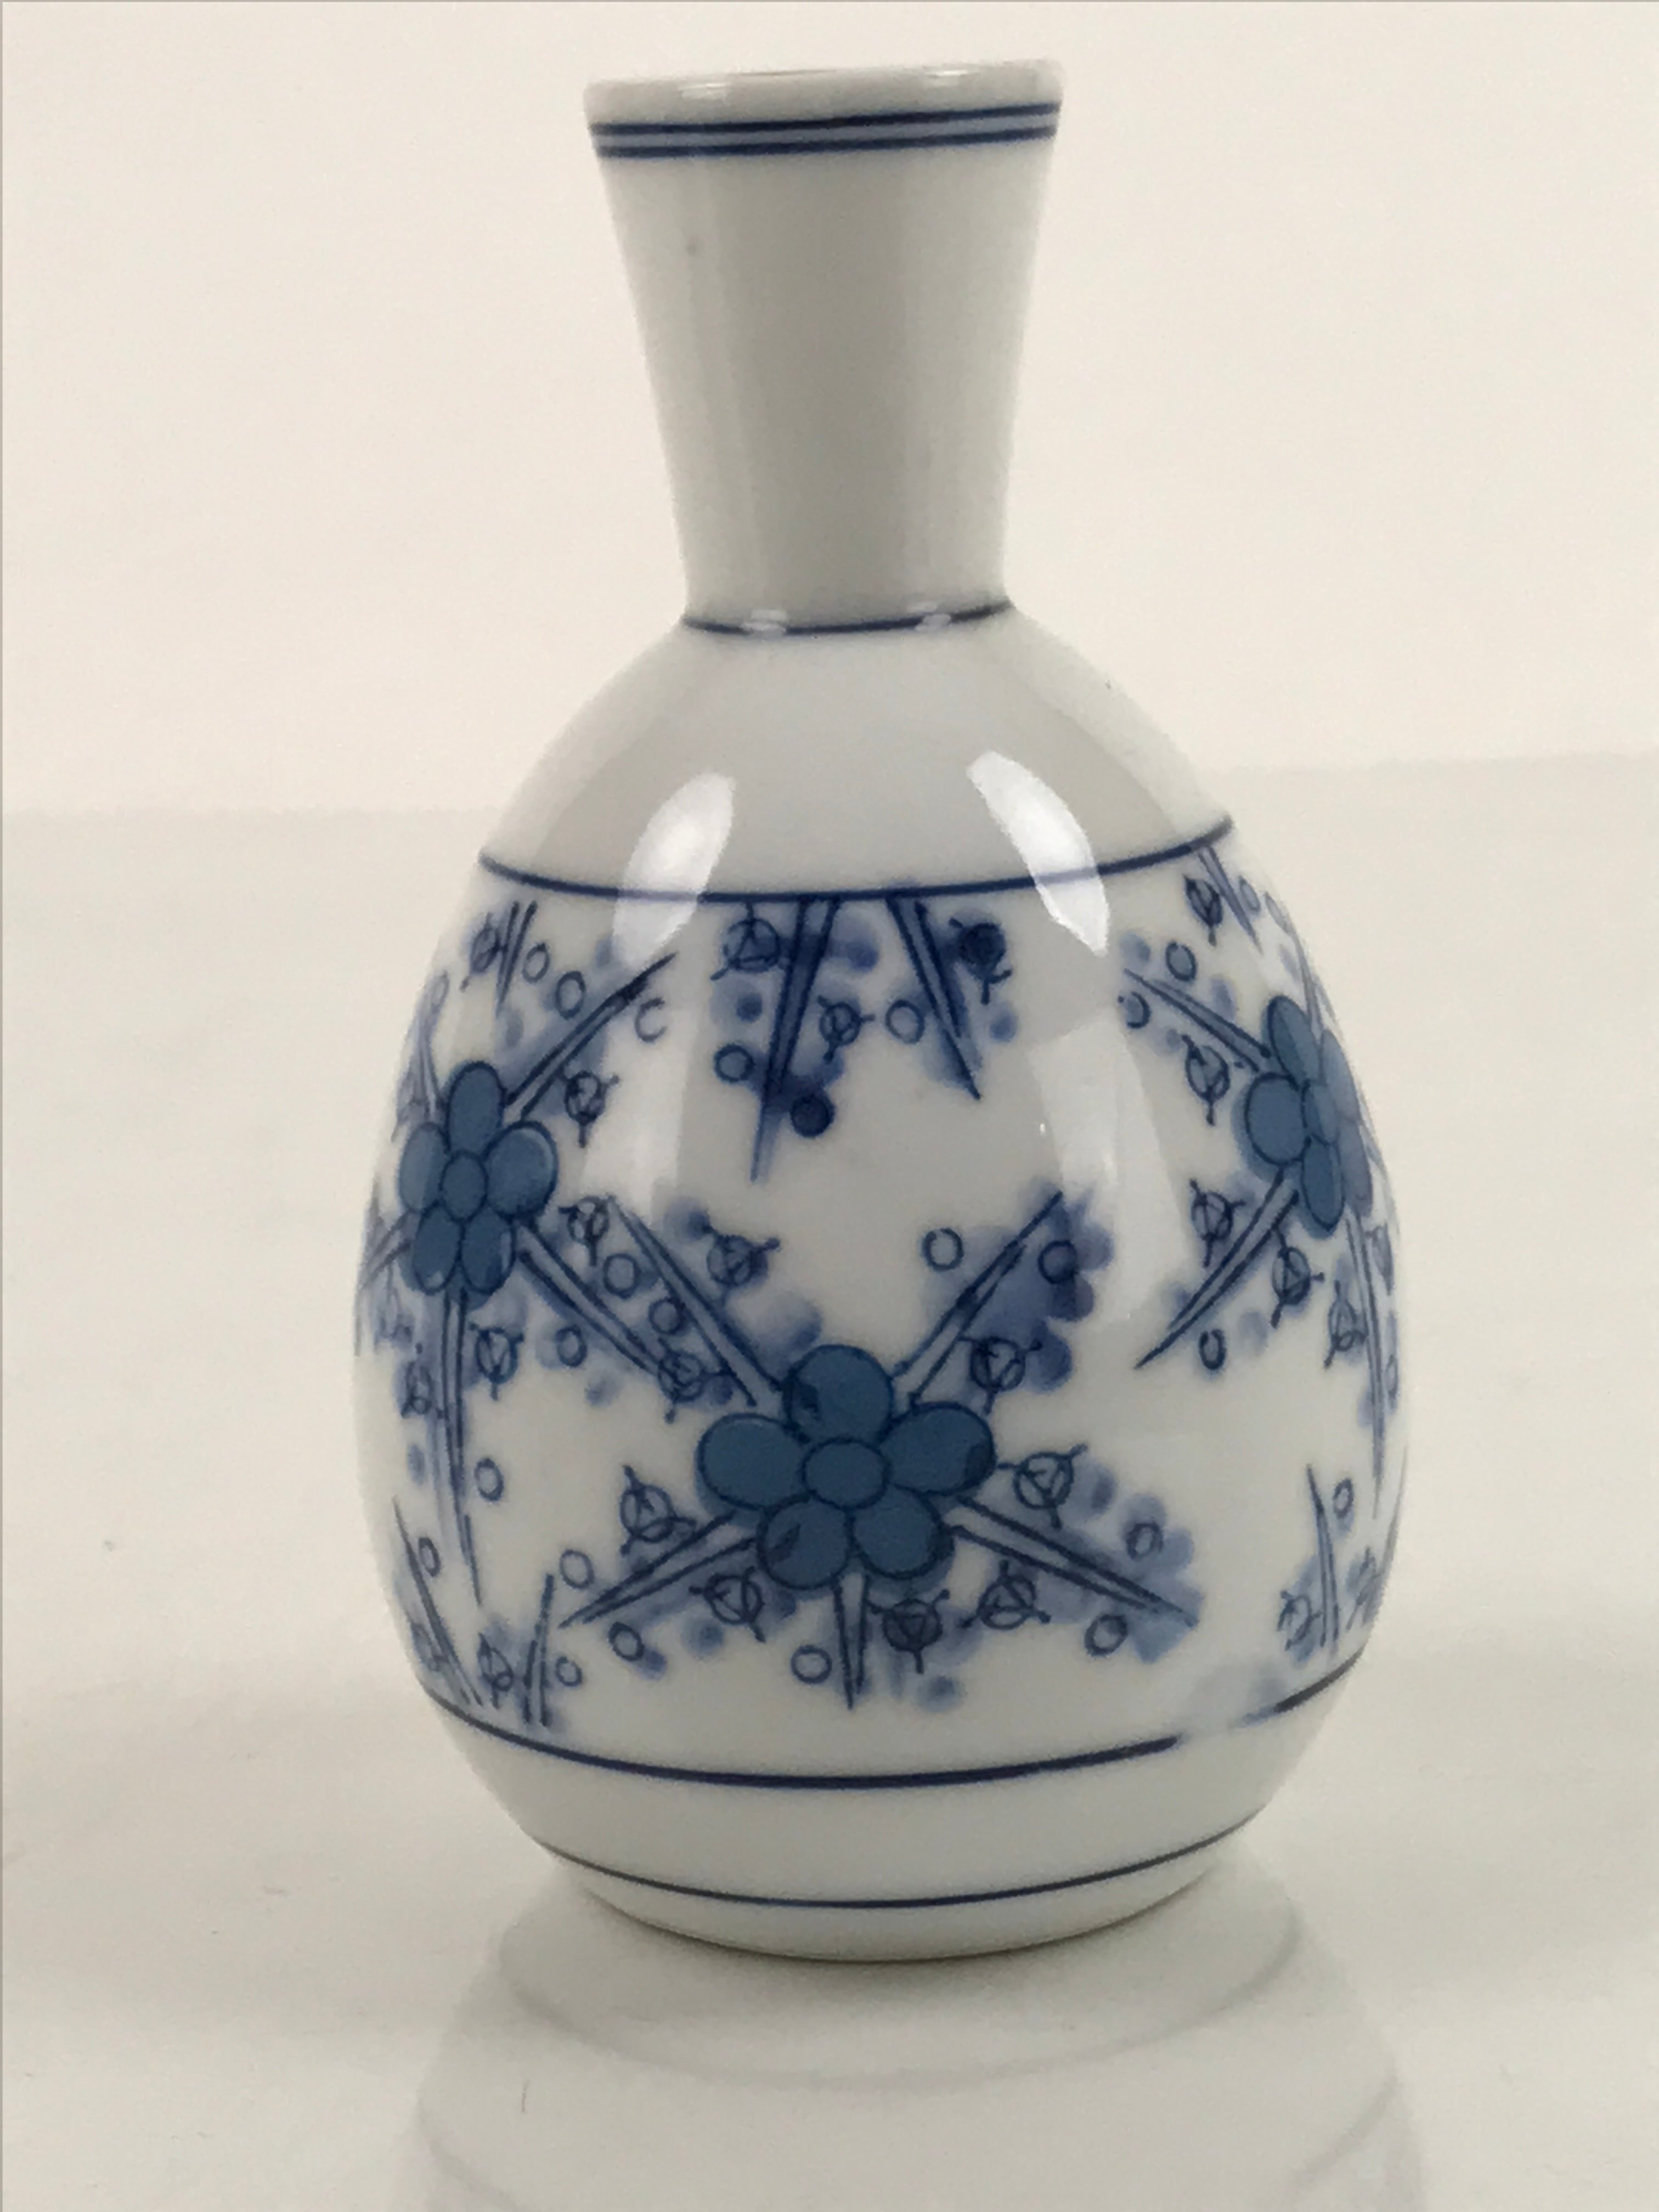 Japanese Sake Bottle Porcelain Tokkuri Vtg Atomic Plum Blossoms White Blue TS683